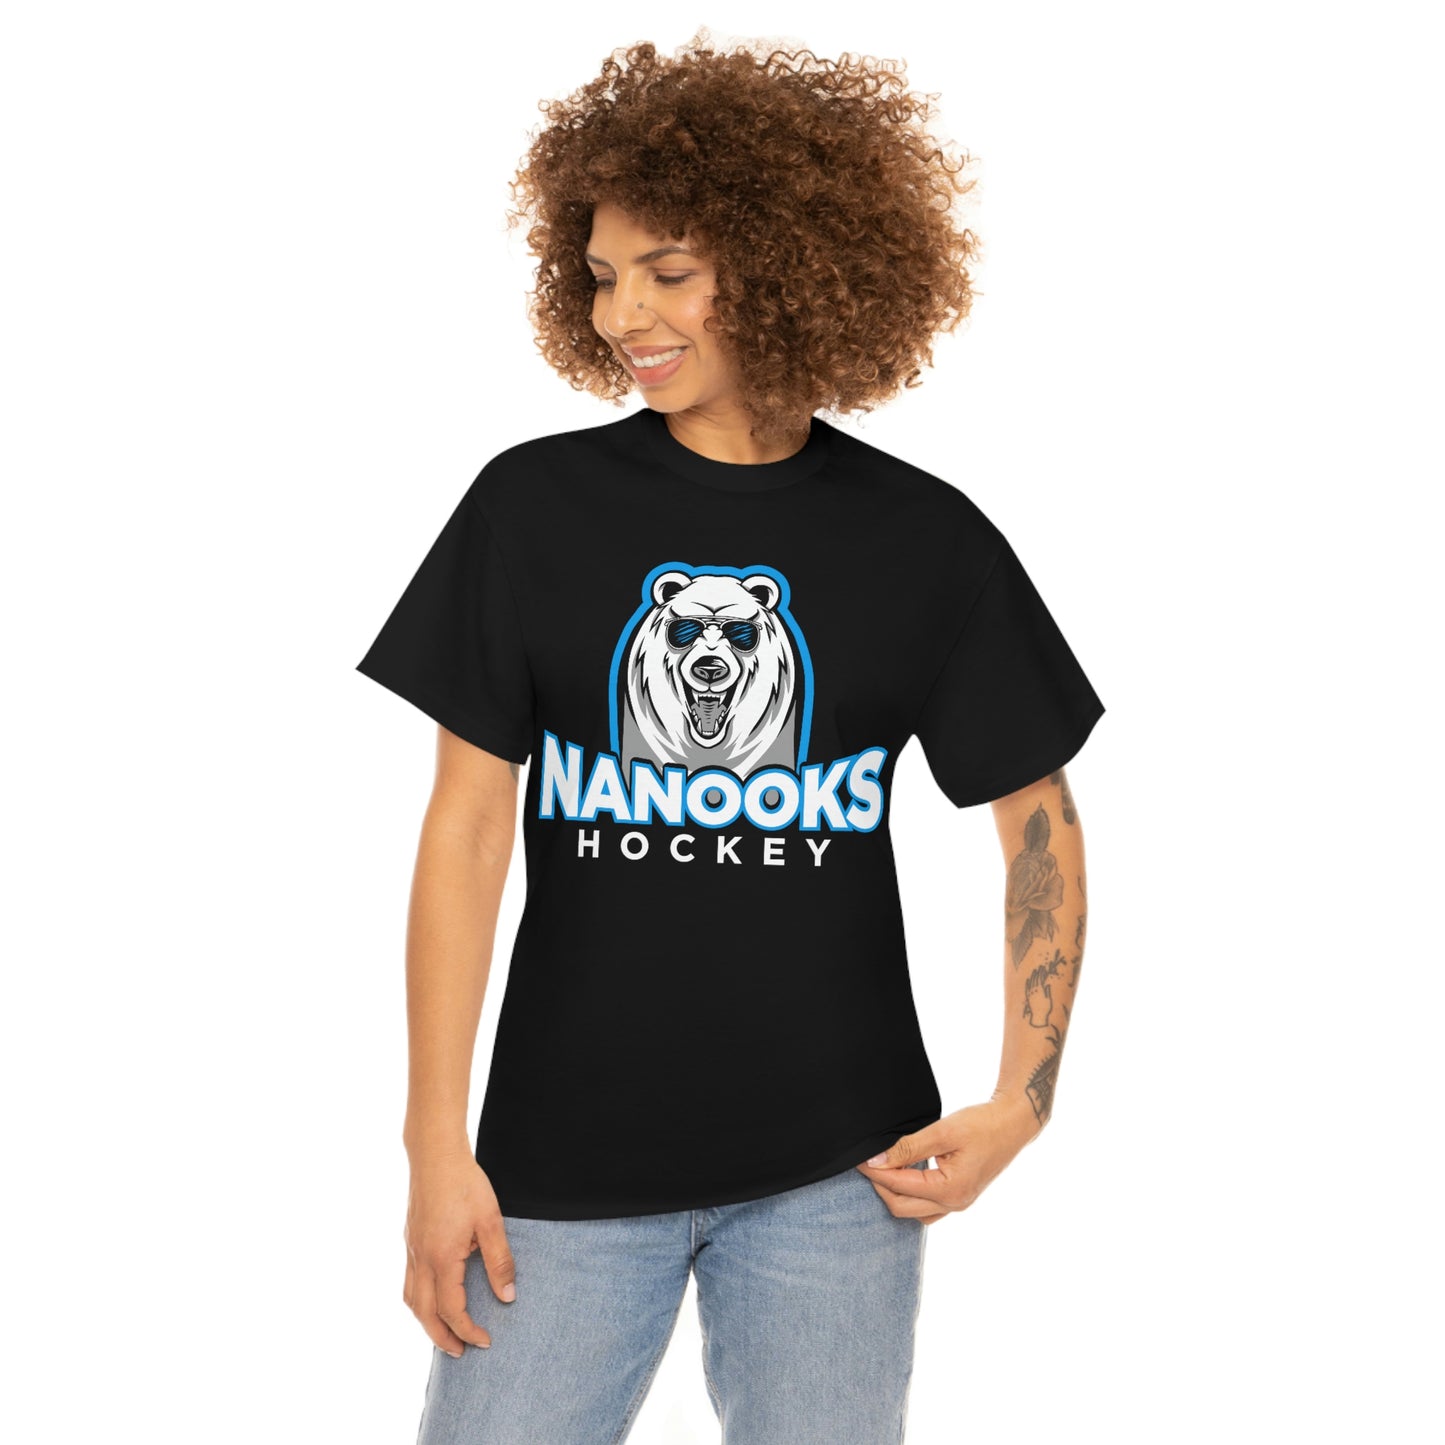 Nanooks T-shirt